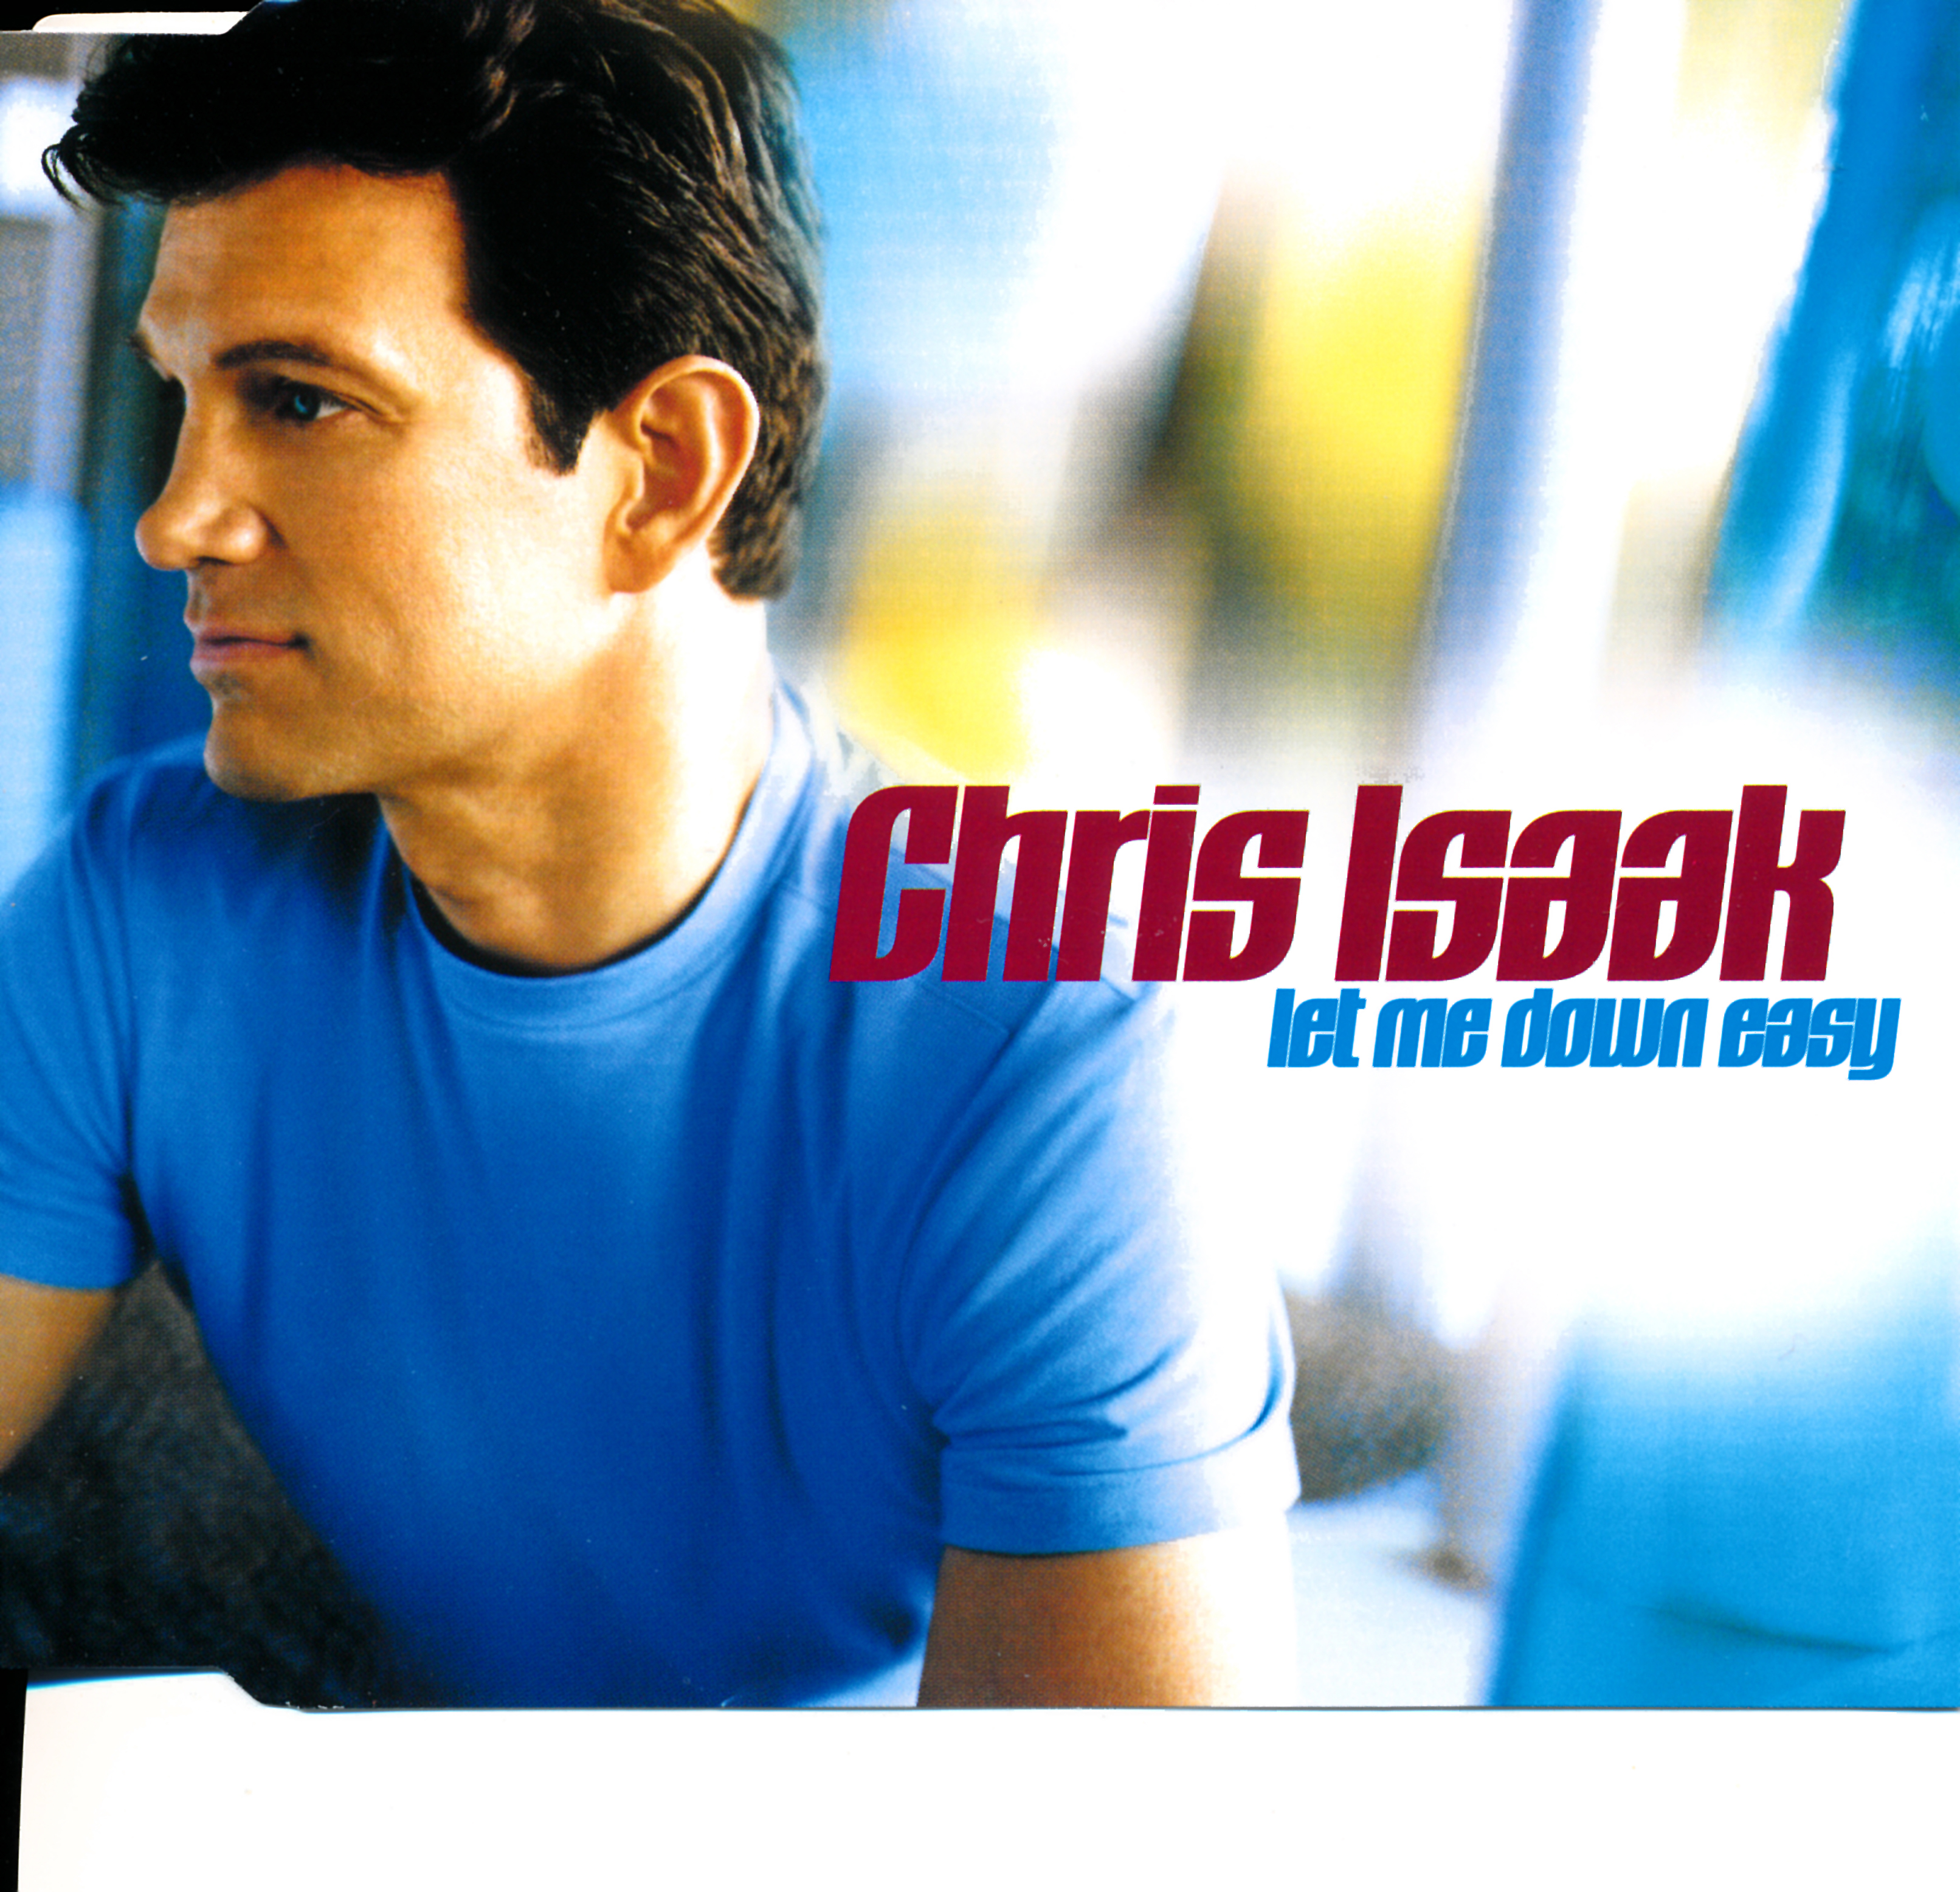 Chris Isaak - Let Me Down Easy